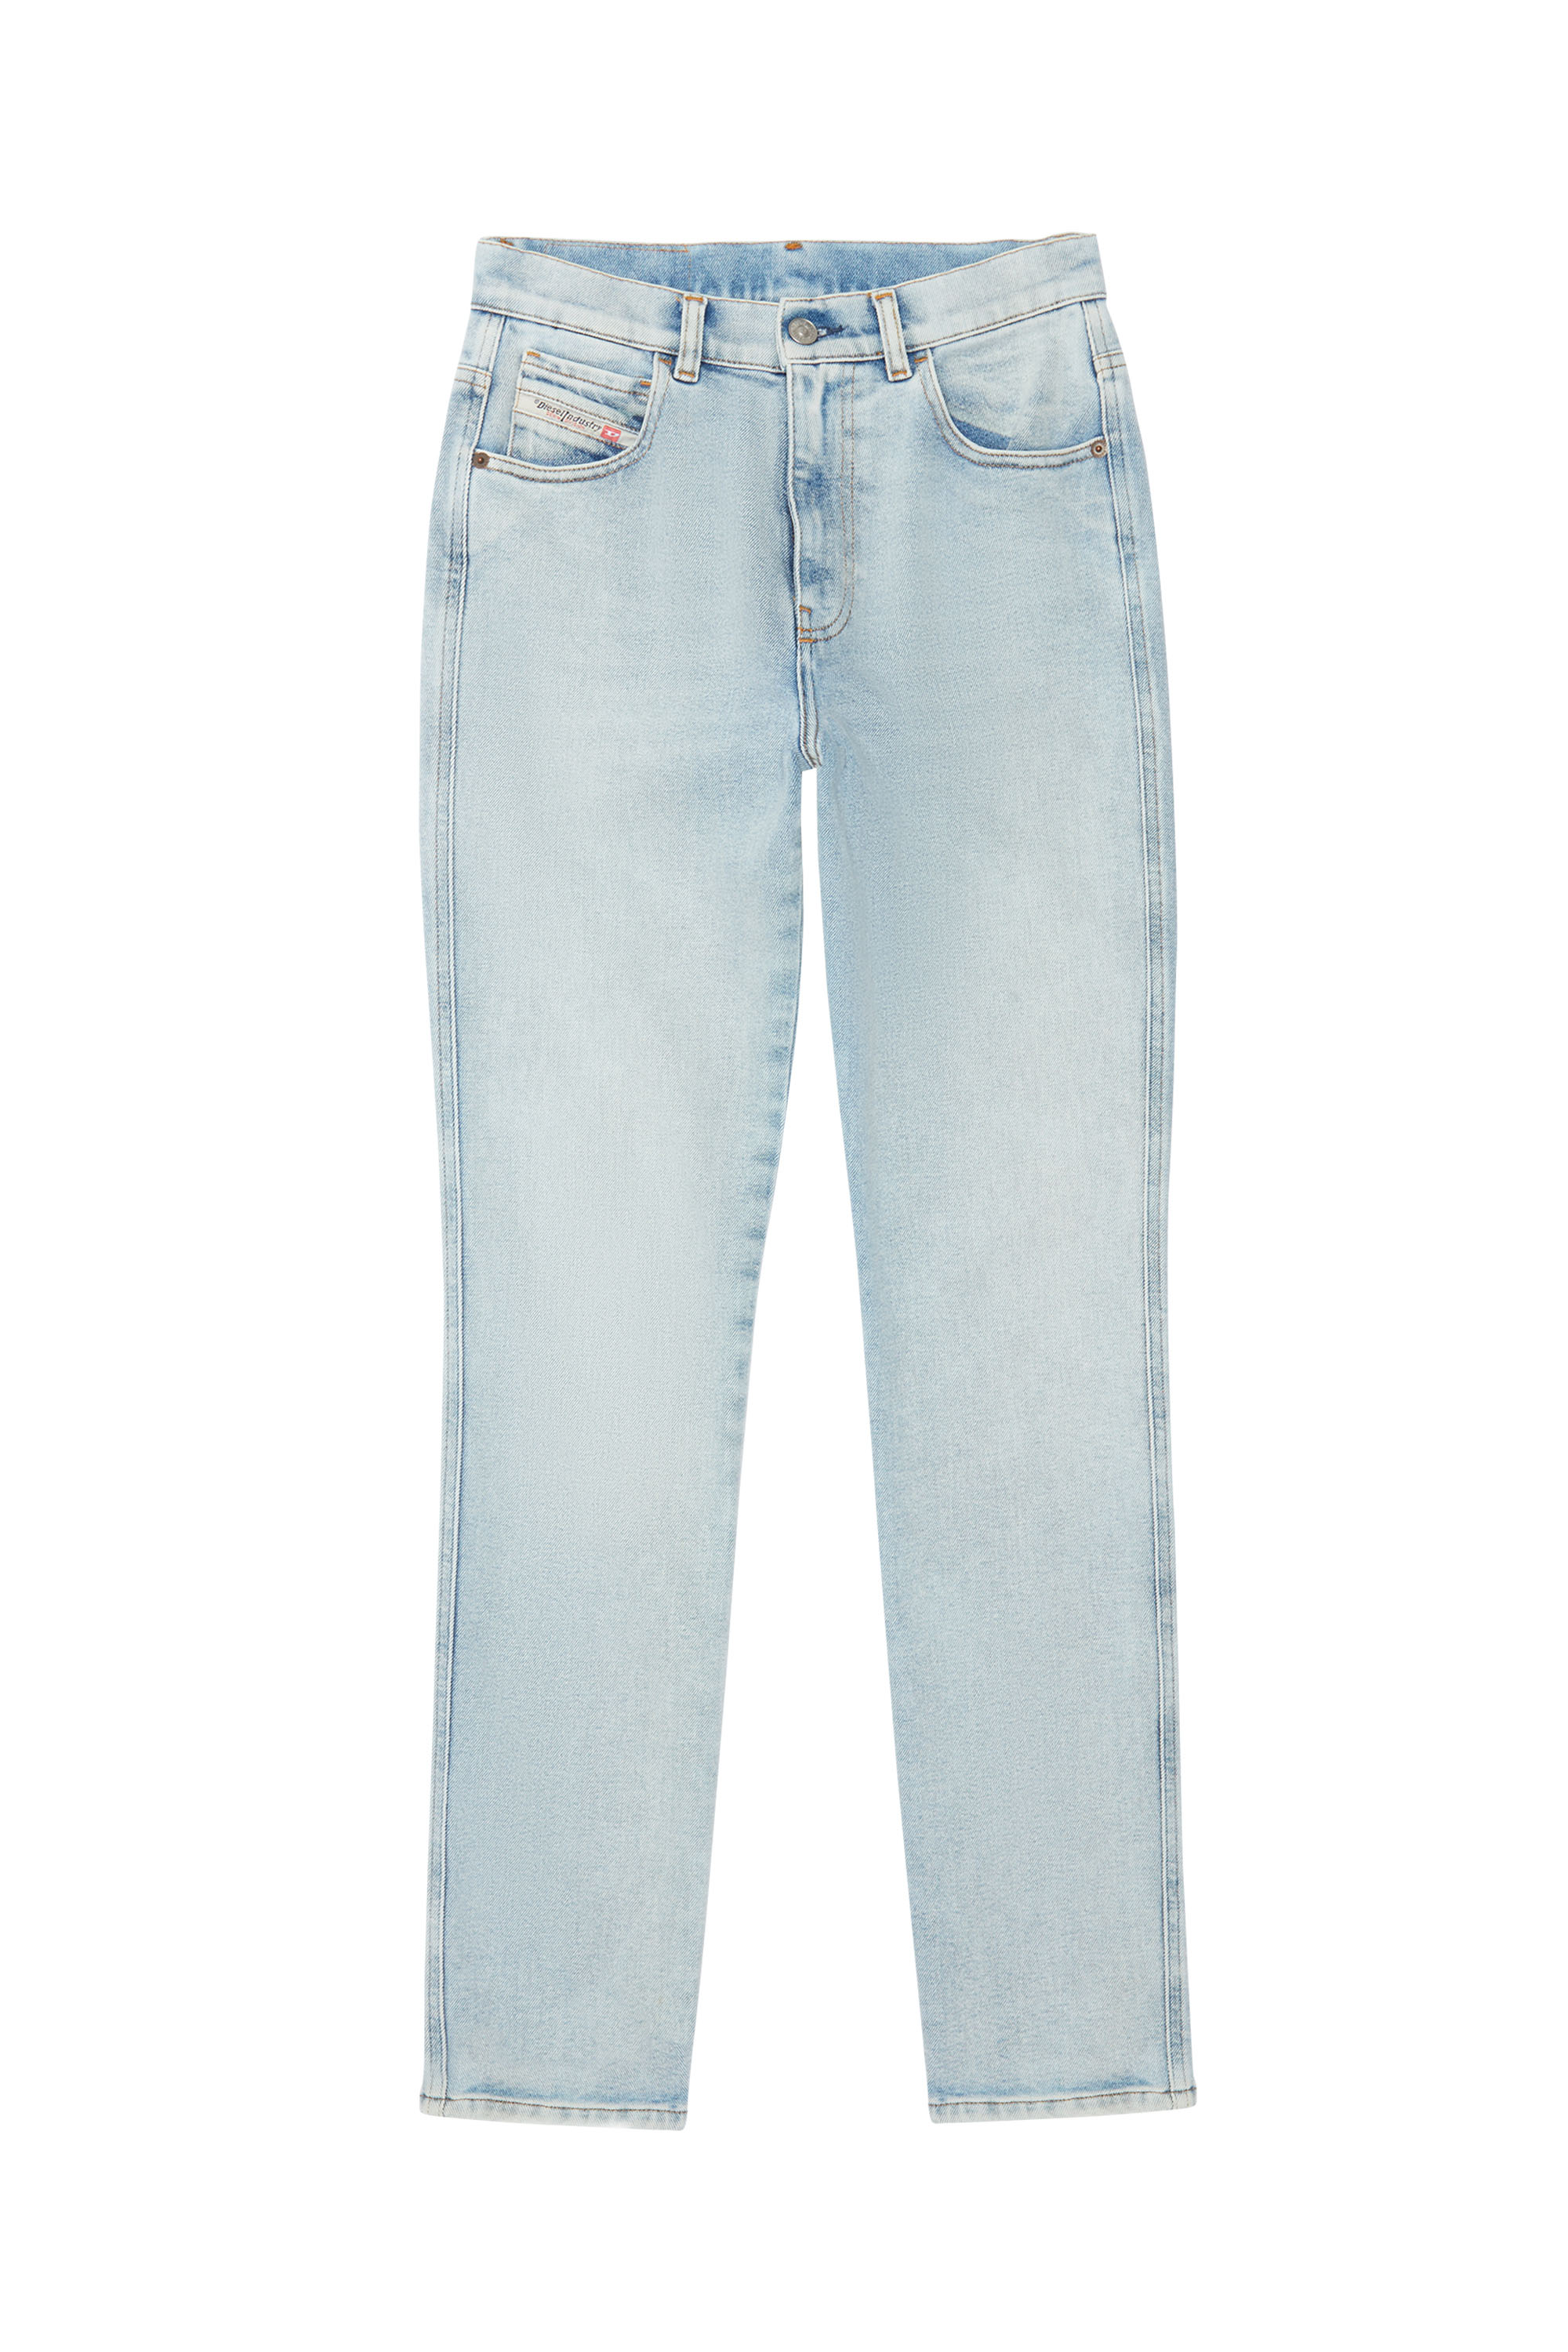 Diesel - Straight Jeans 1994 09C07,  - Image 6